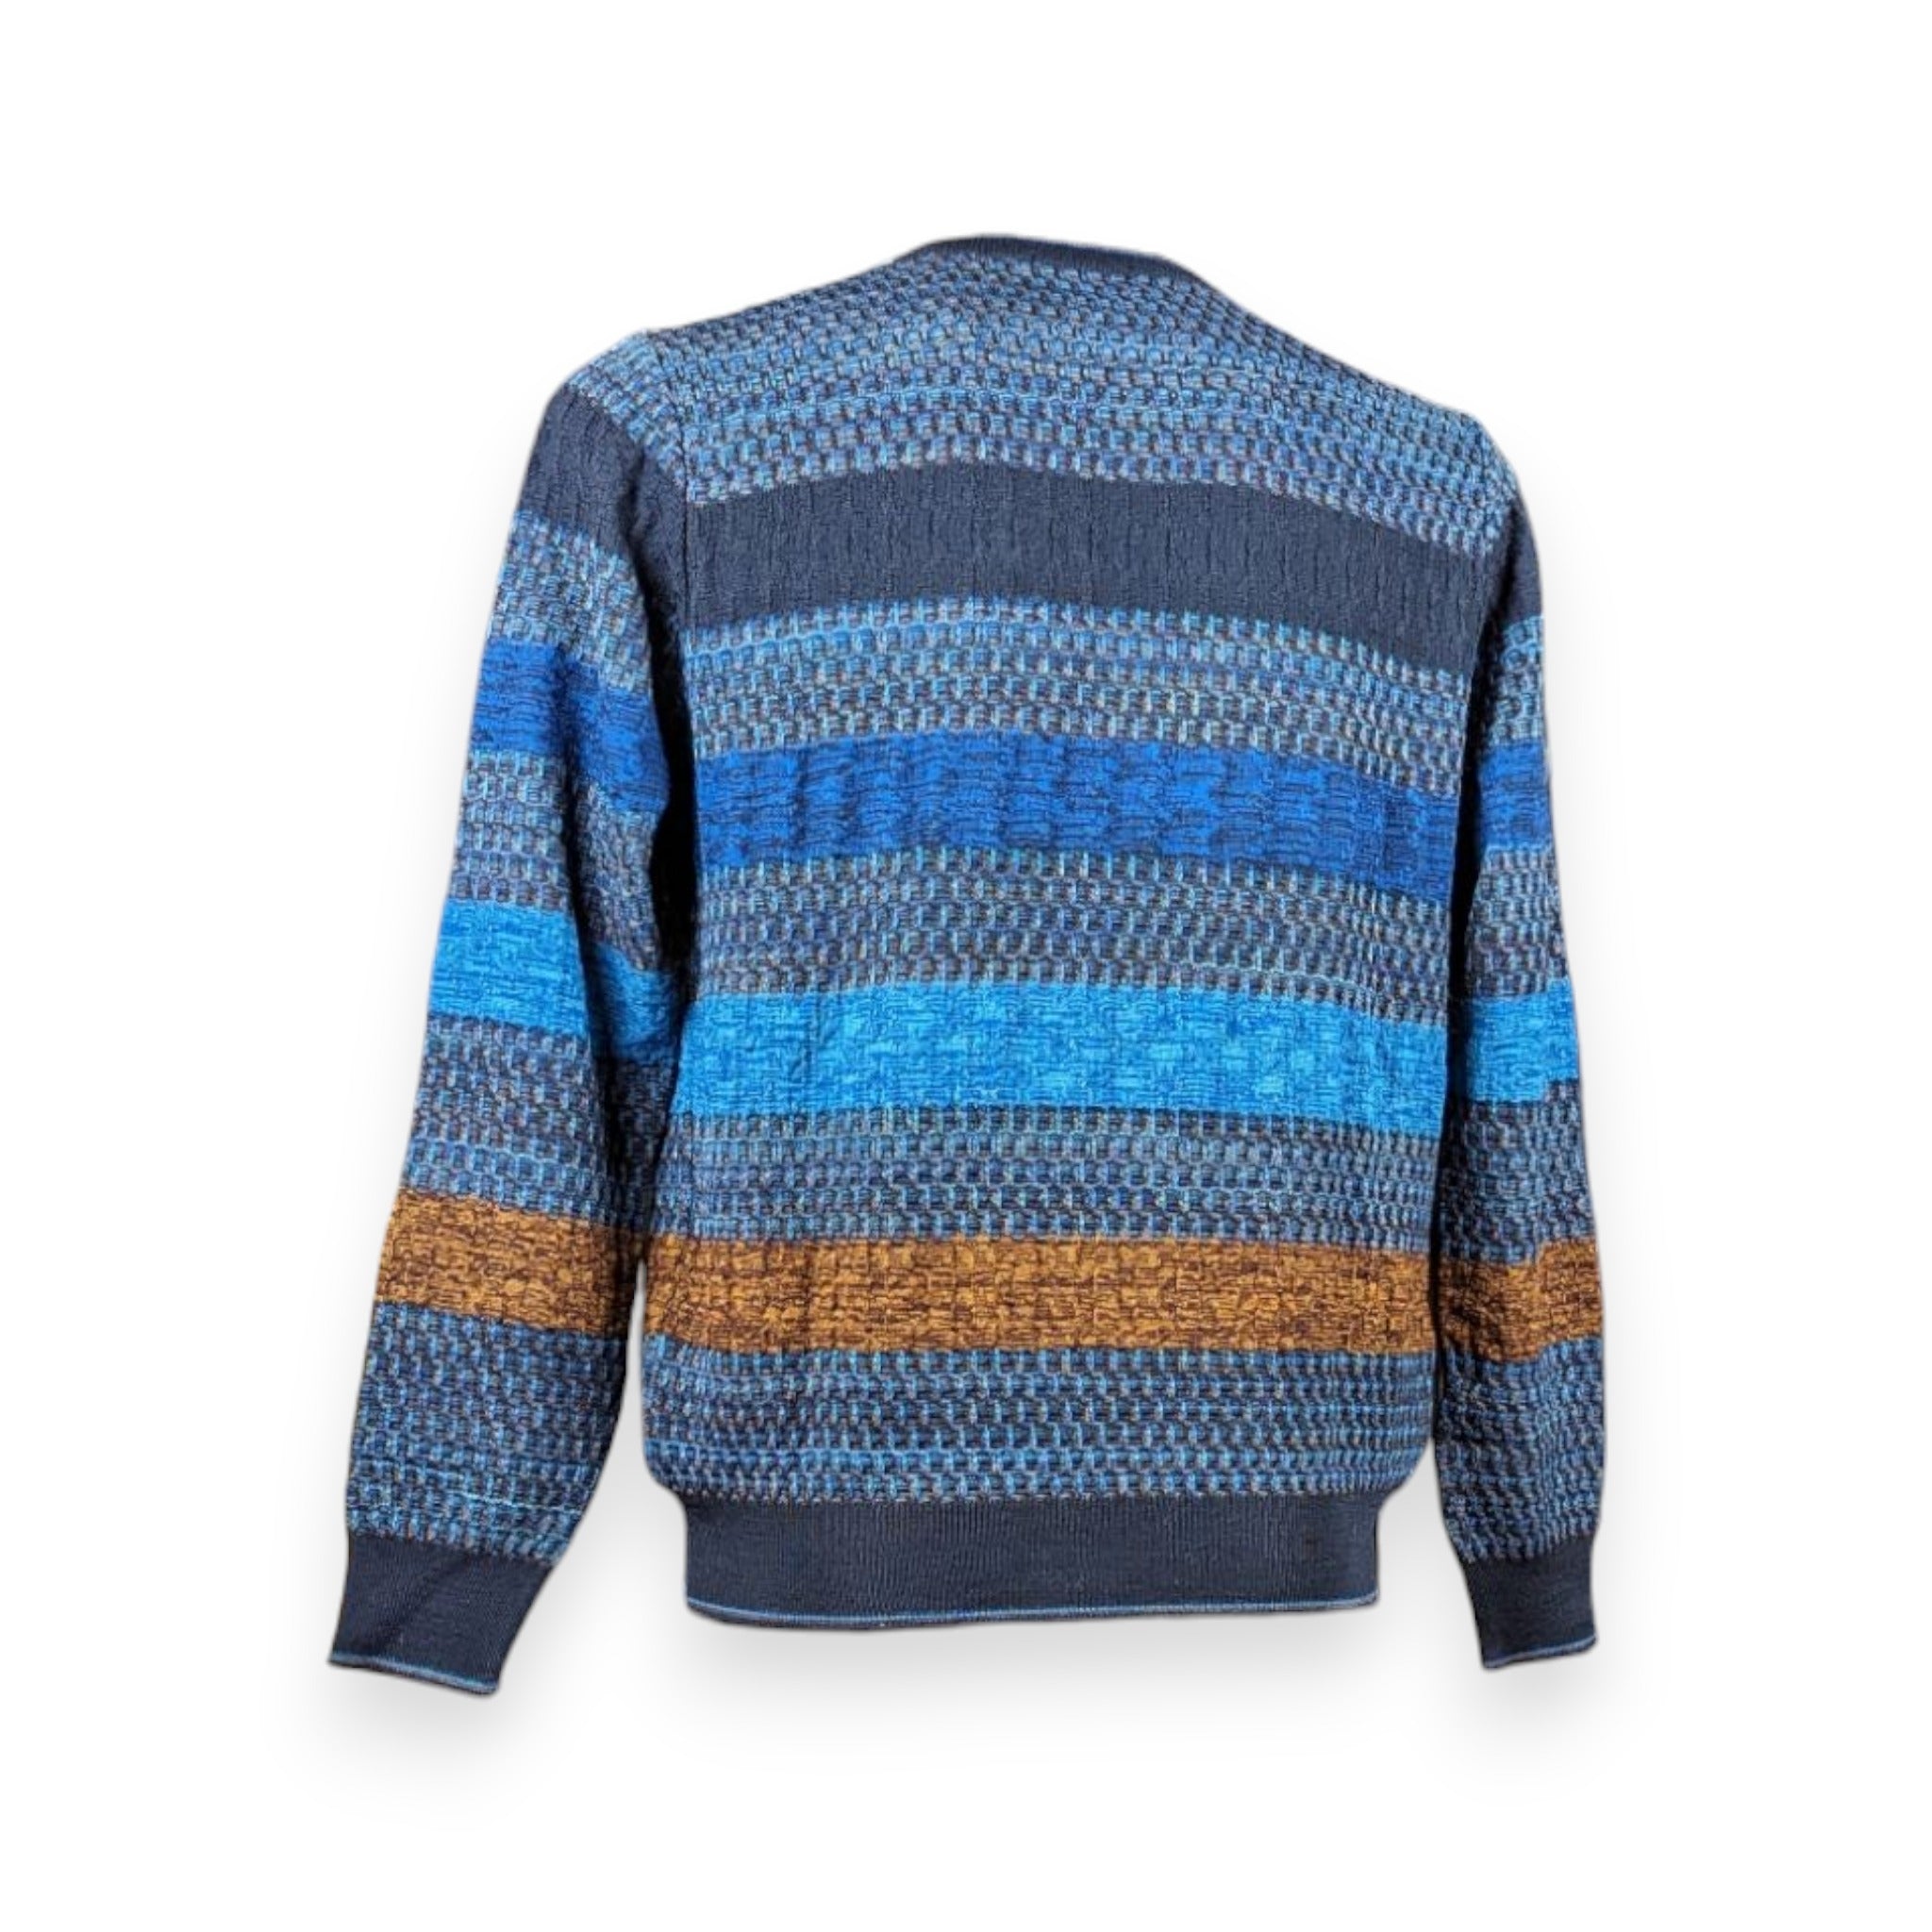 Montechiaro Striped Multicolor Sweater